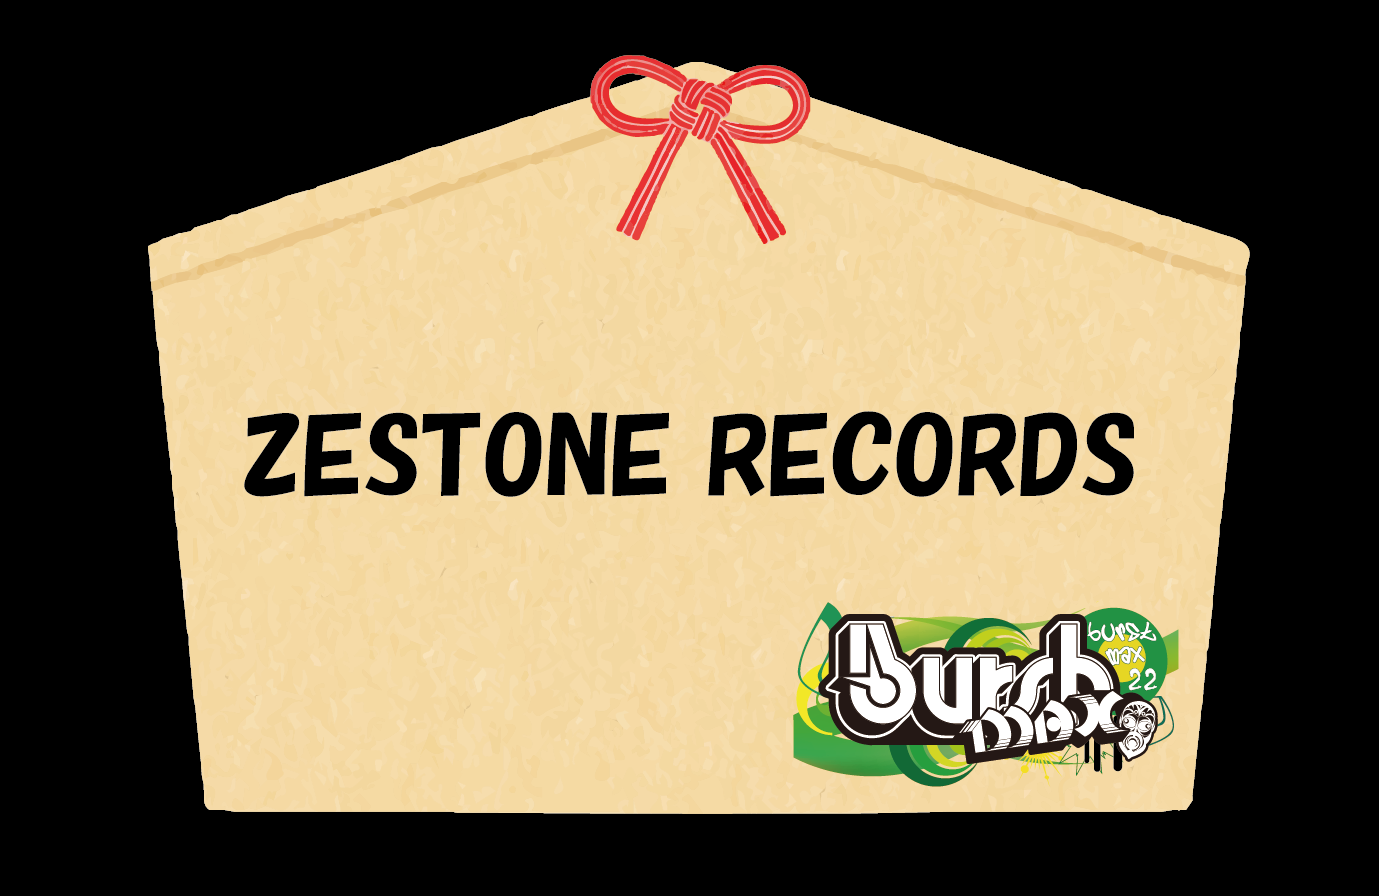 ZESTONE RECORDS